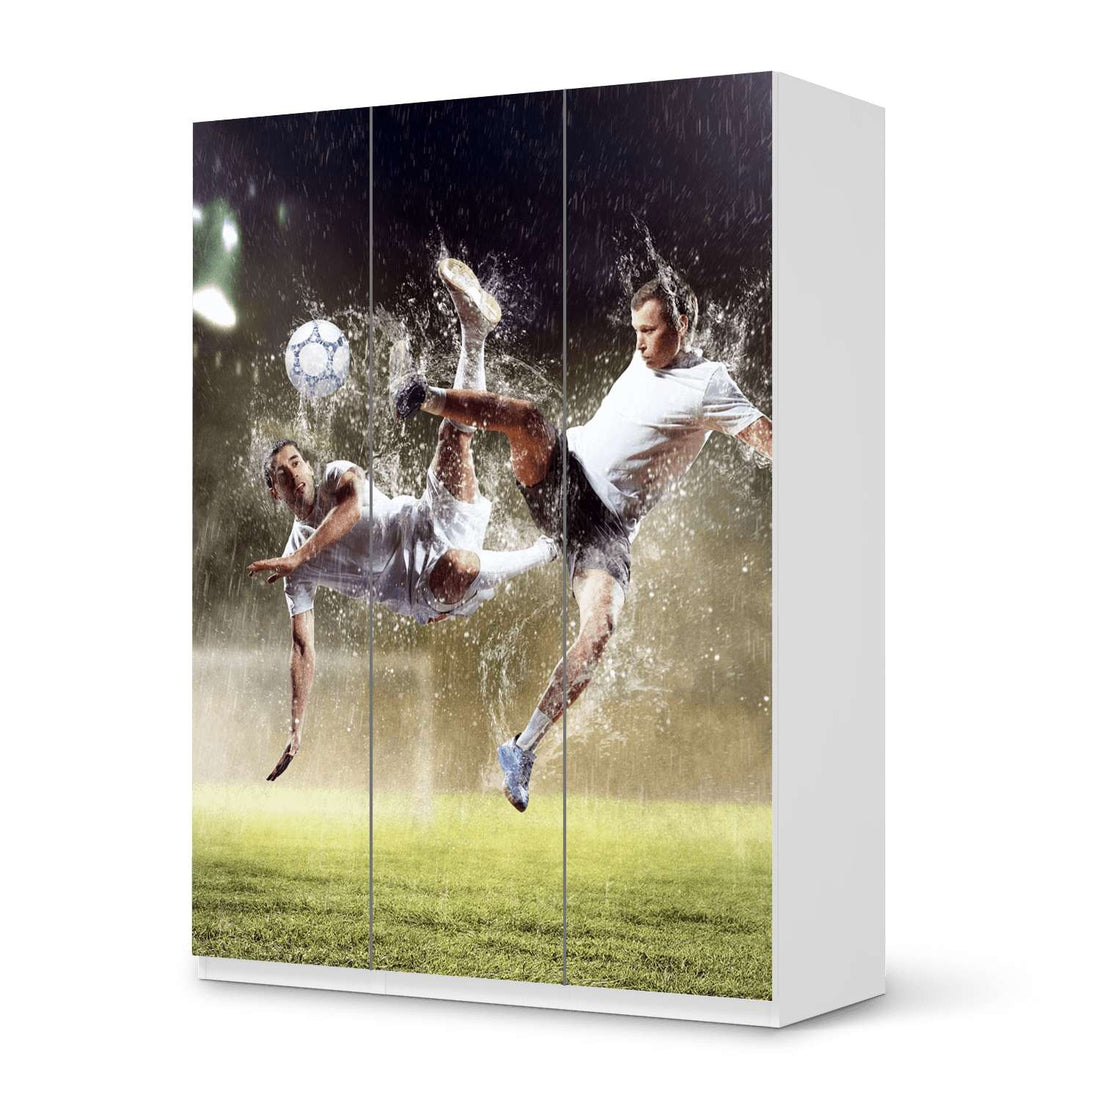 Folie für Möbel Soccer - IKEA Pax Schrank 201 cm Höhe - 3 Türen - weiss